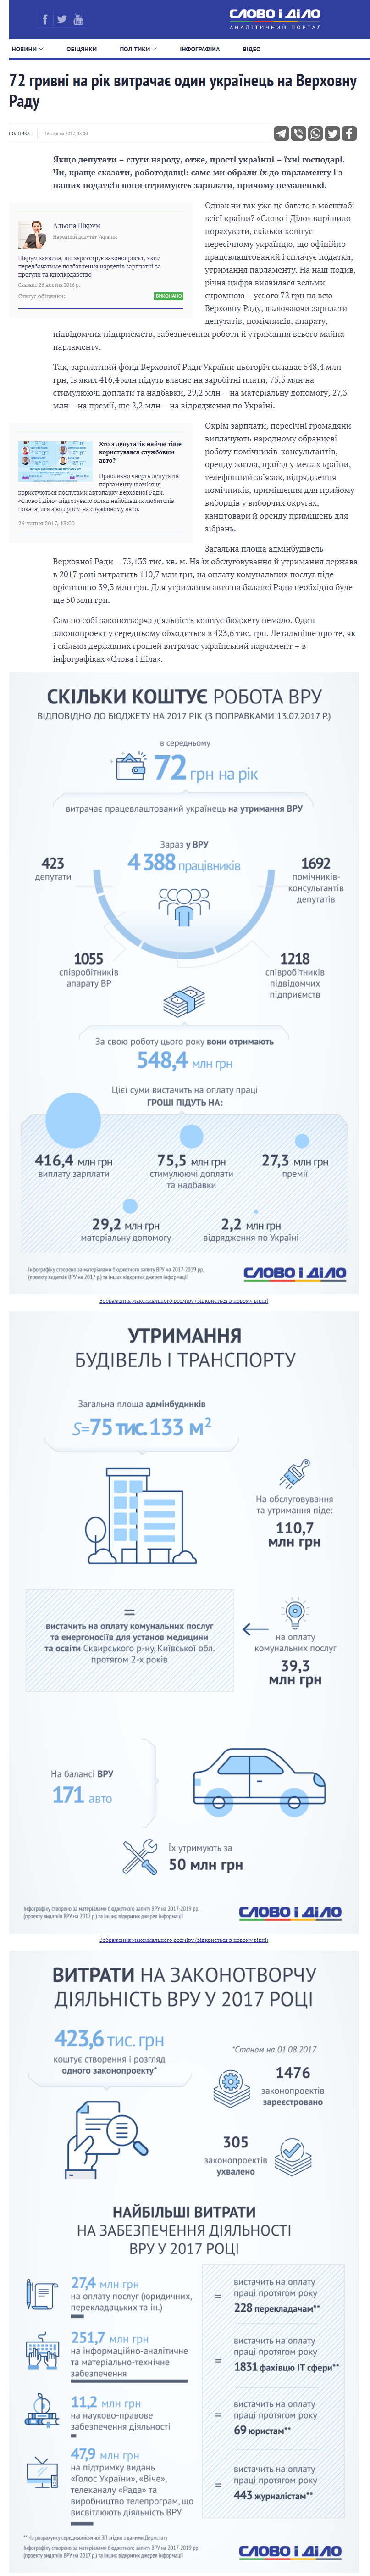 https://www.slovoidilo.ua/2017/08/16/infografika/polityka/72-hryvni-rik-vytrachaye-odyn-ukrayinecz-verxovnu-radu